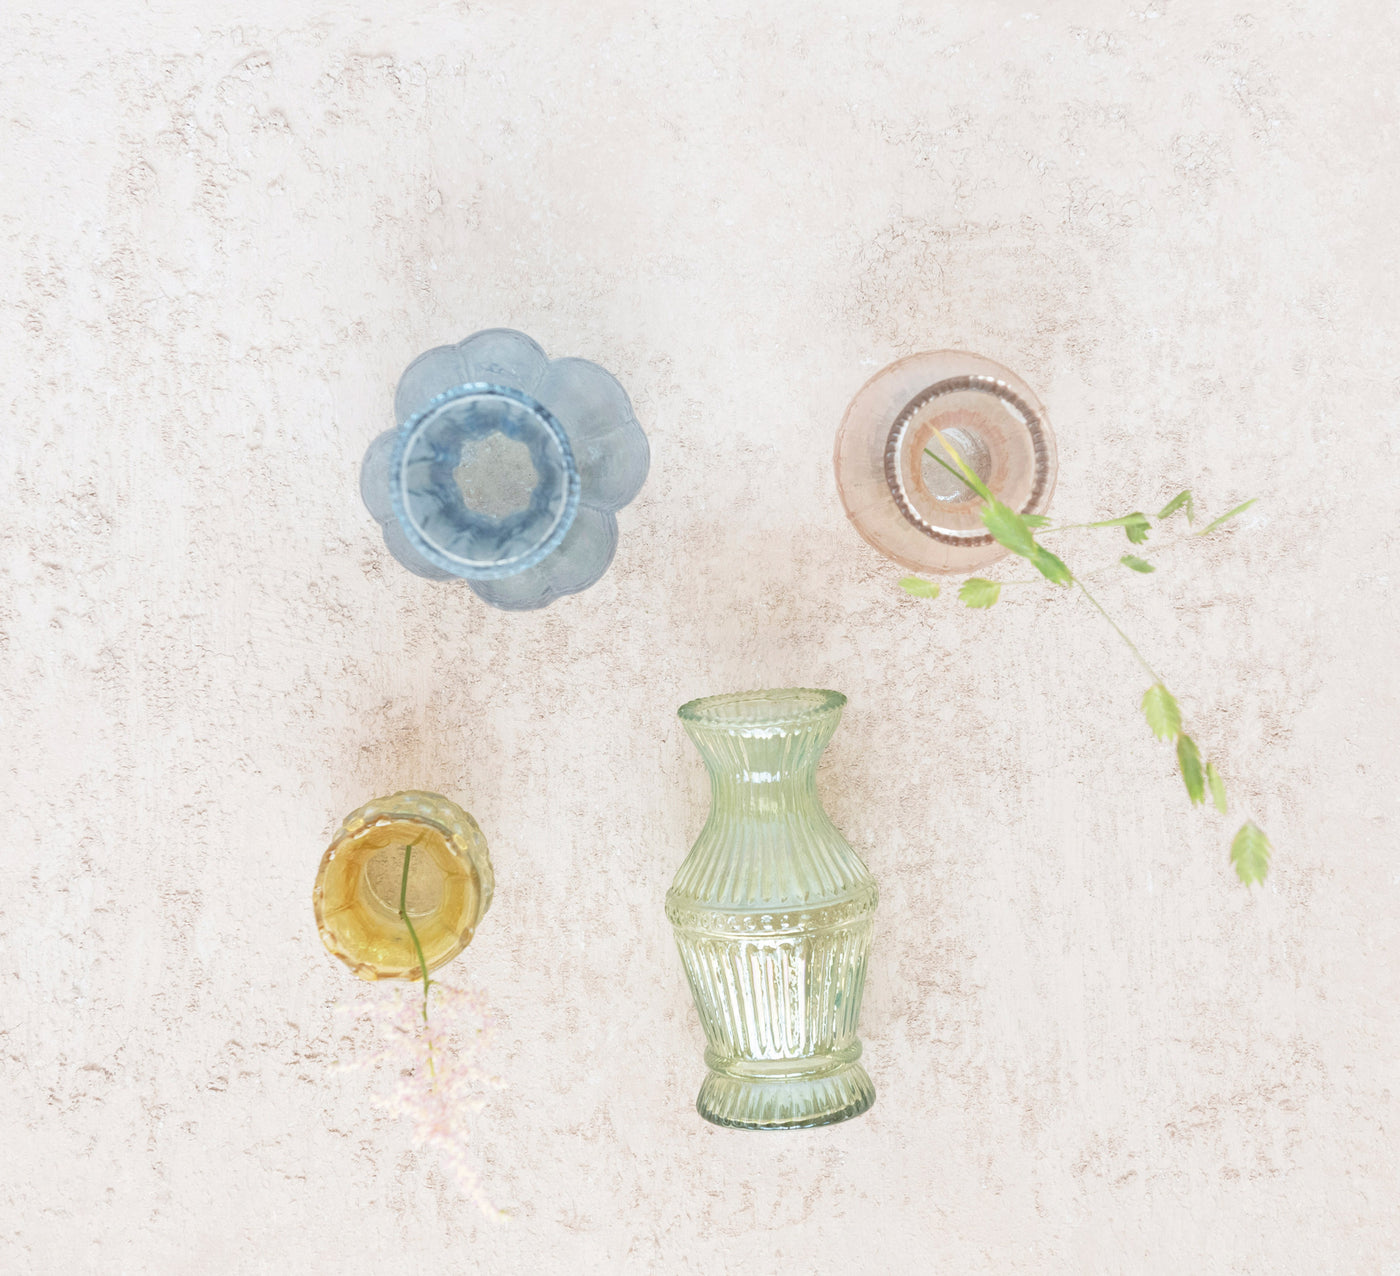 Green Pastel Debossed Glass Vases